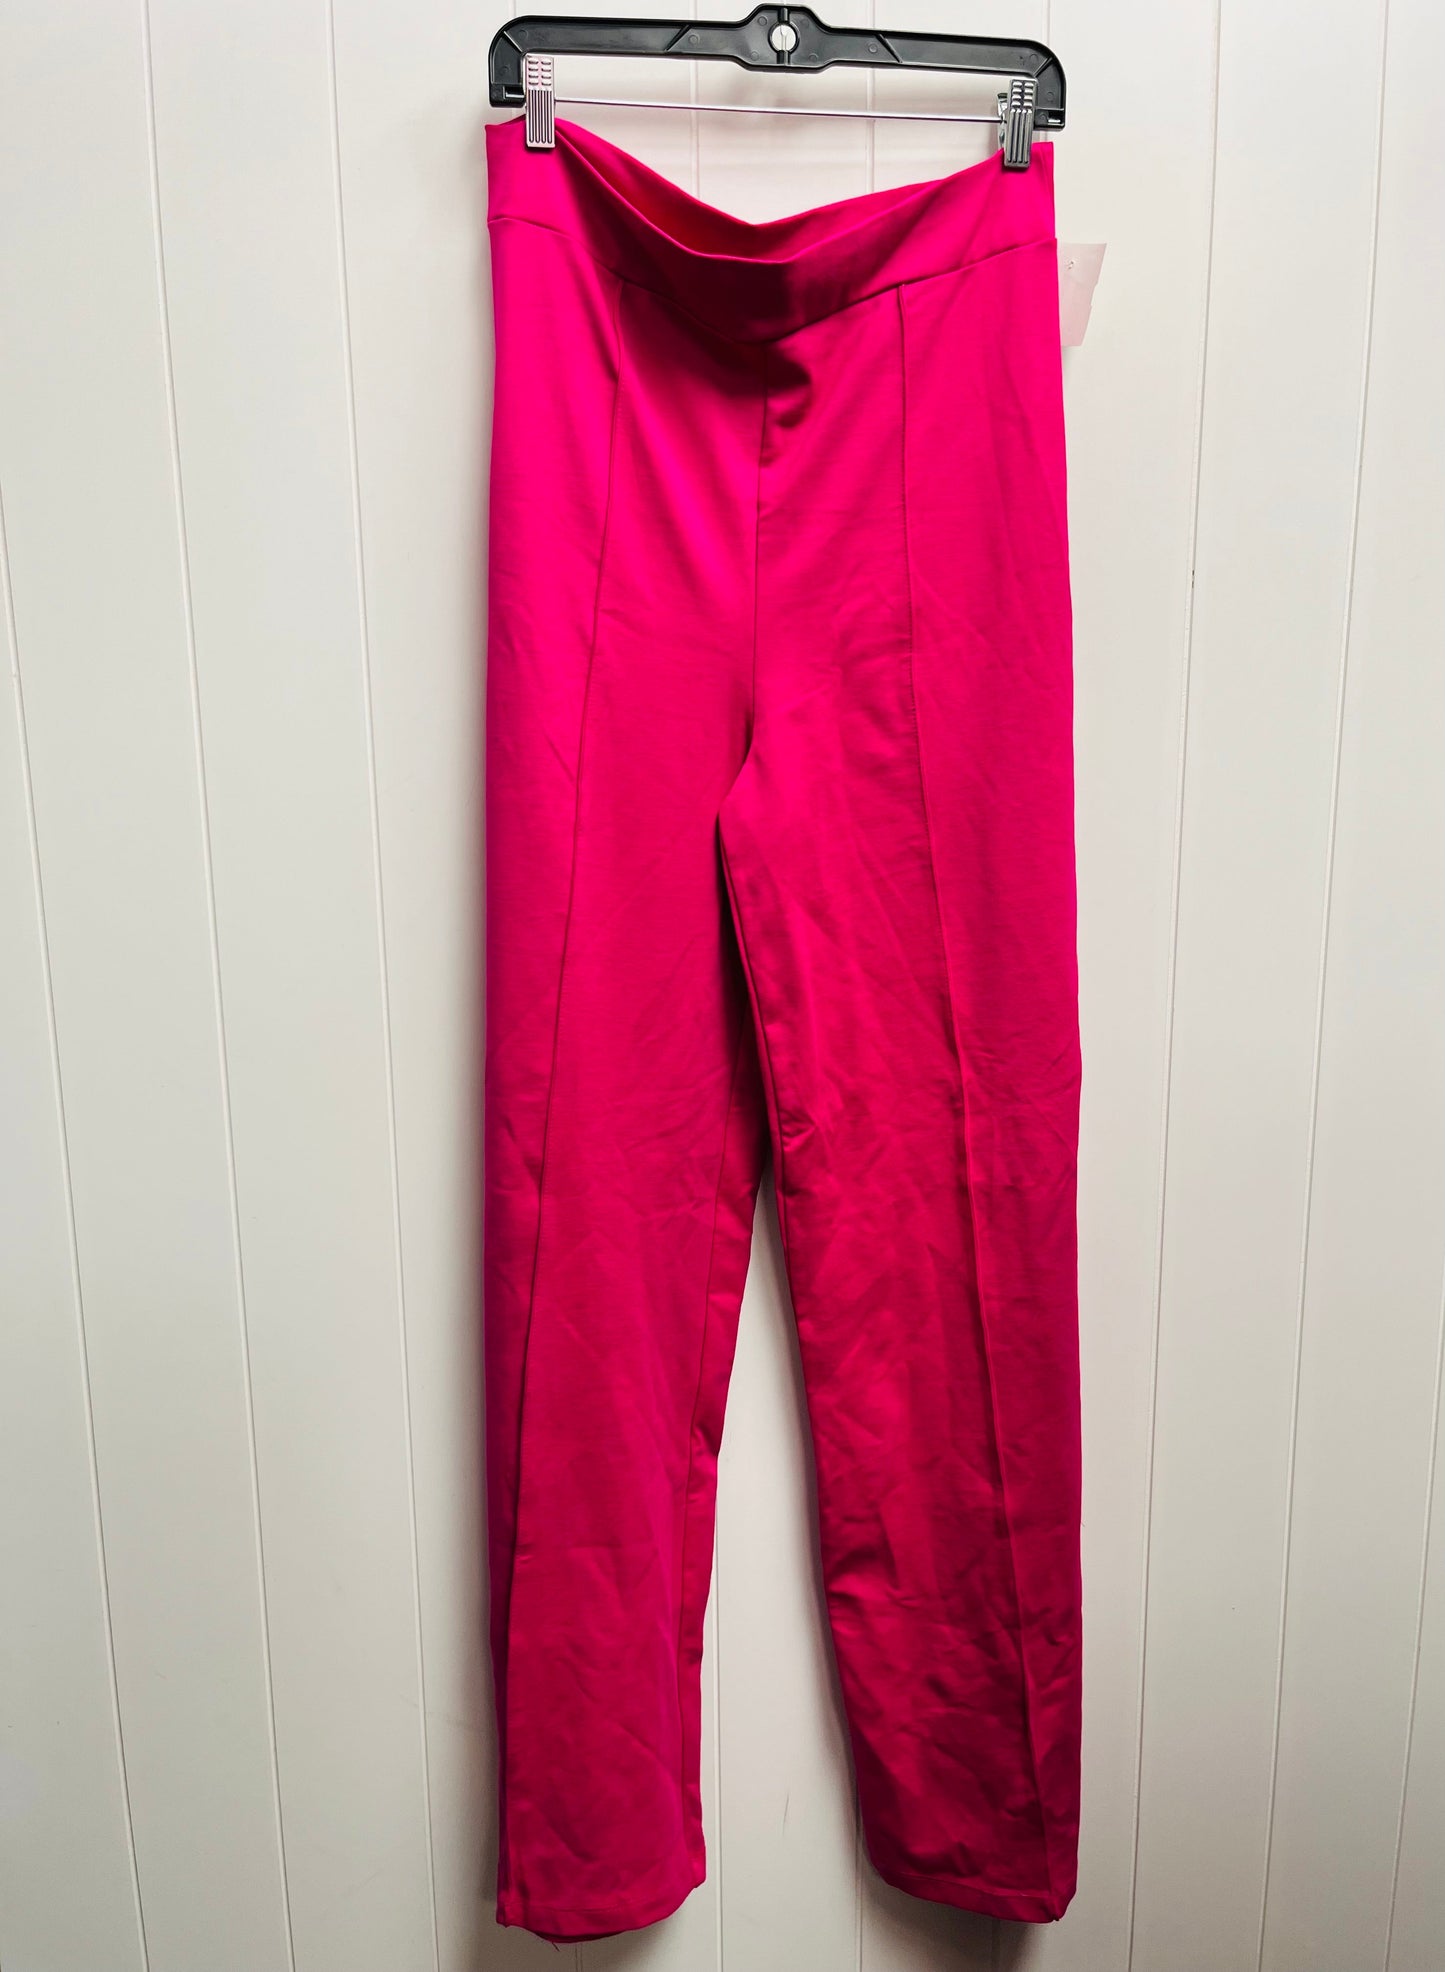 Pink Pants Wide Leg Fashion Nova, Size 2x